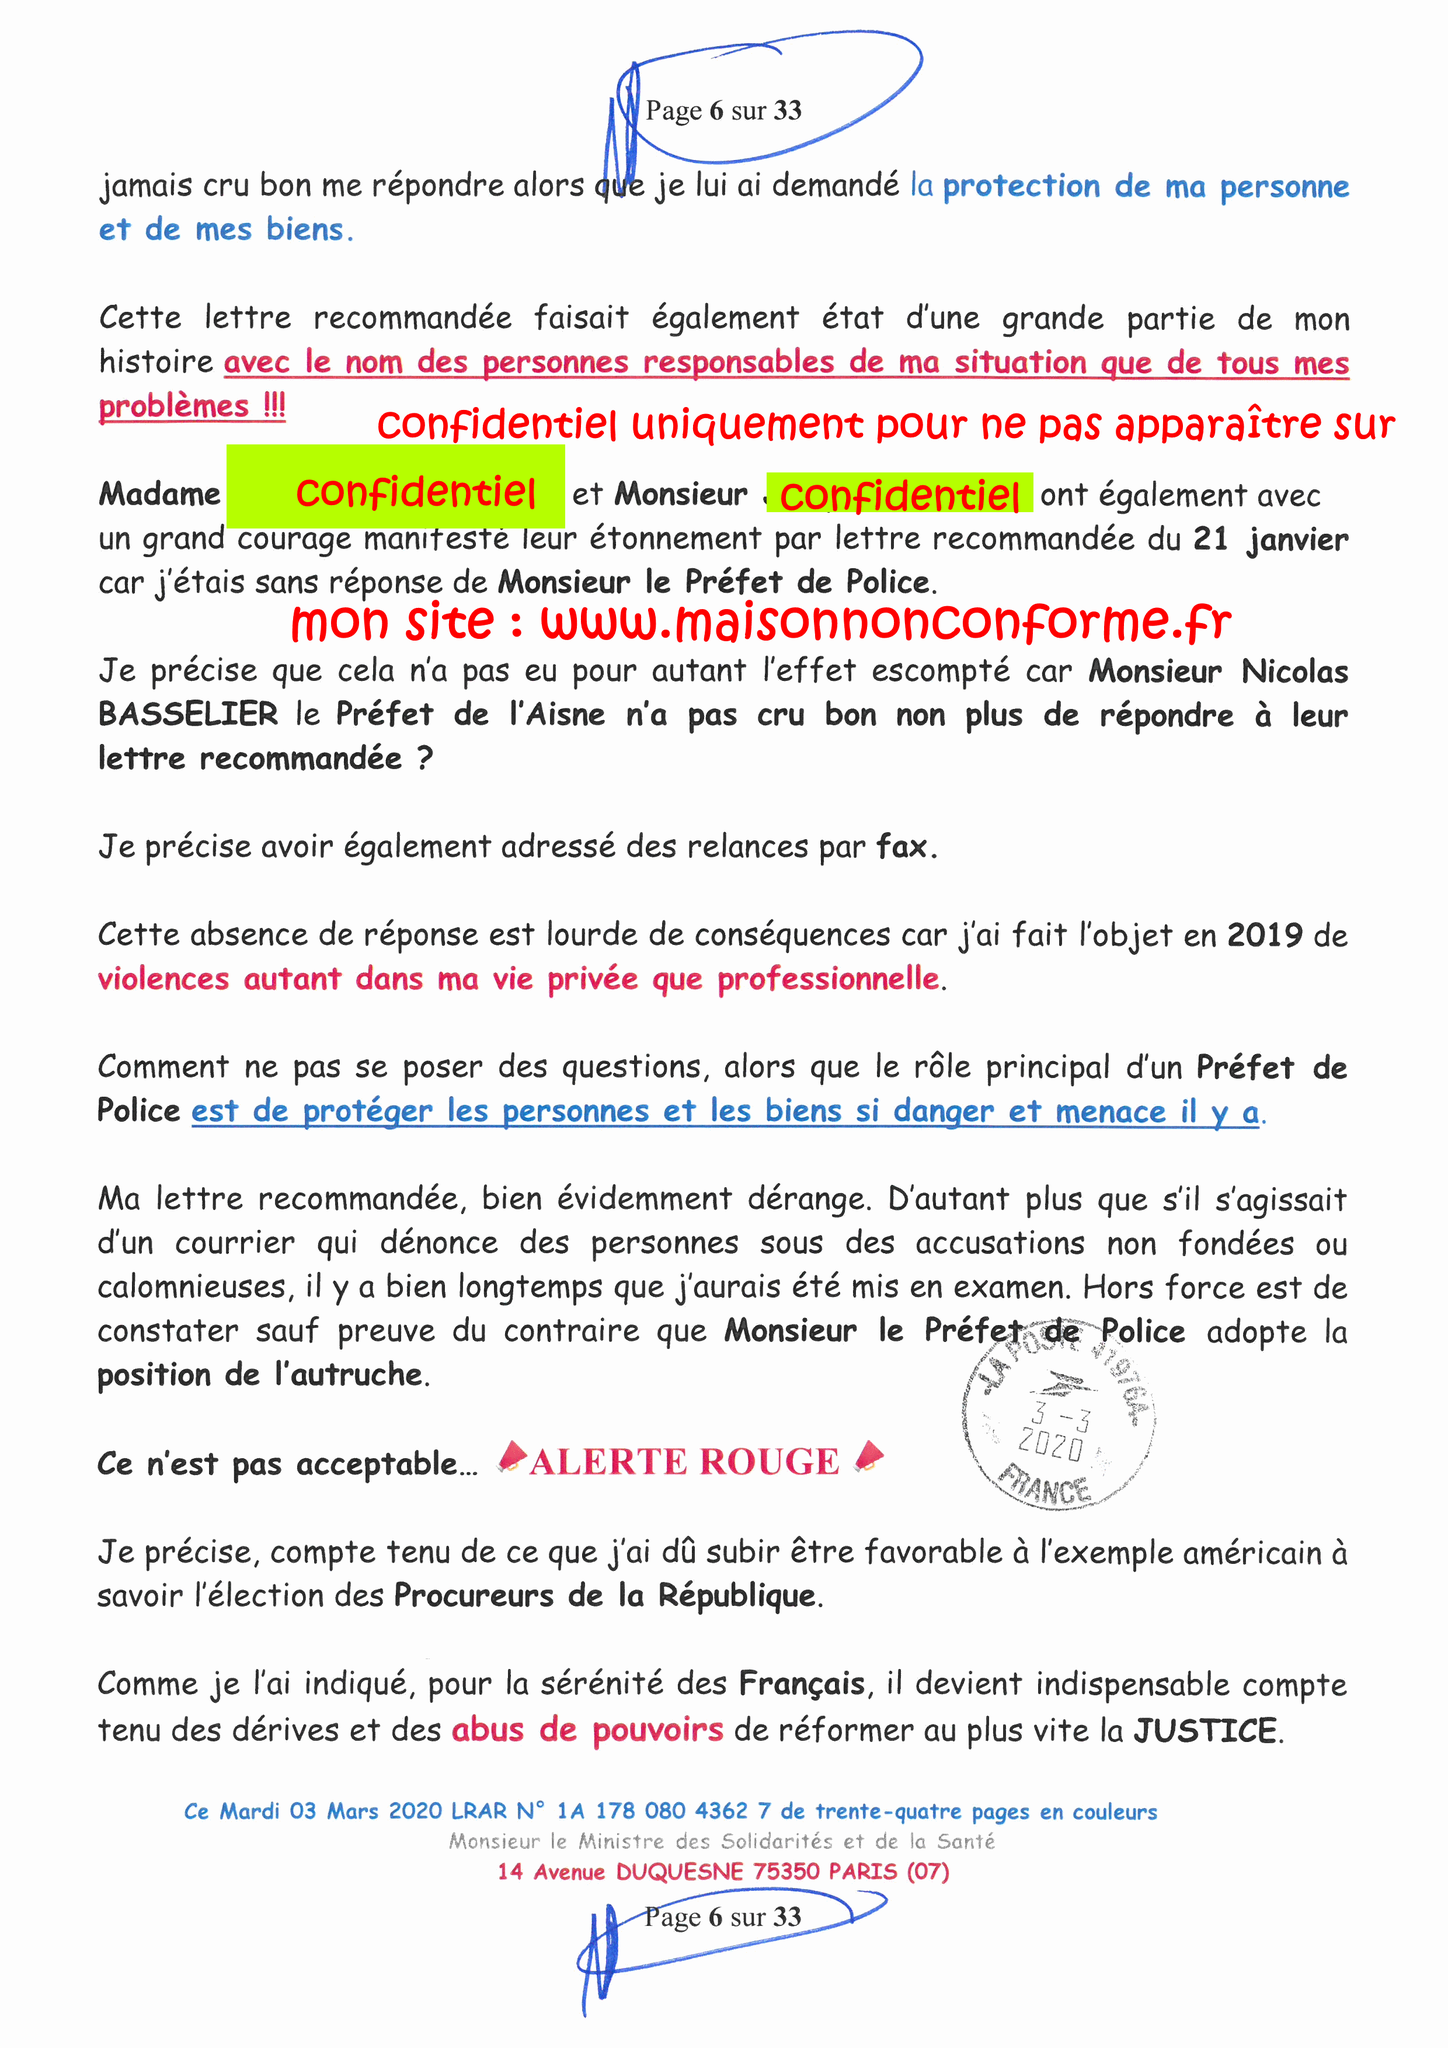 Page 6 sur 33 Ma lettre recommandée N0 1A 178 080 4362 7 du 03 Mars 2020 à Monsieur Olivier VERAN le Ministre de la Santé et des Solidarités www.jesuispatrick.fr www.jesuisvictime.fr www.alerte-rouge-france.fr